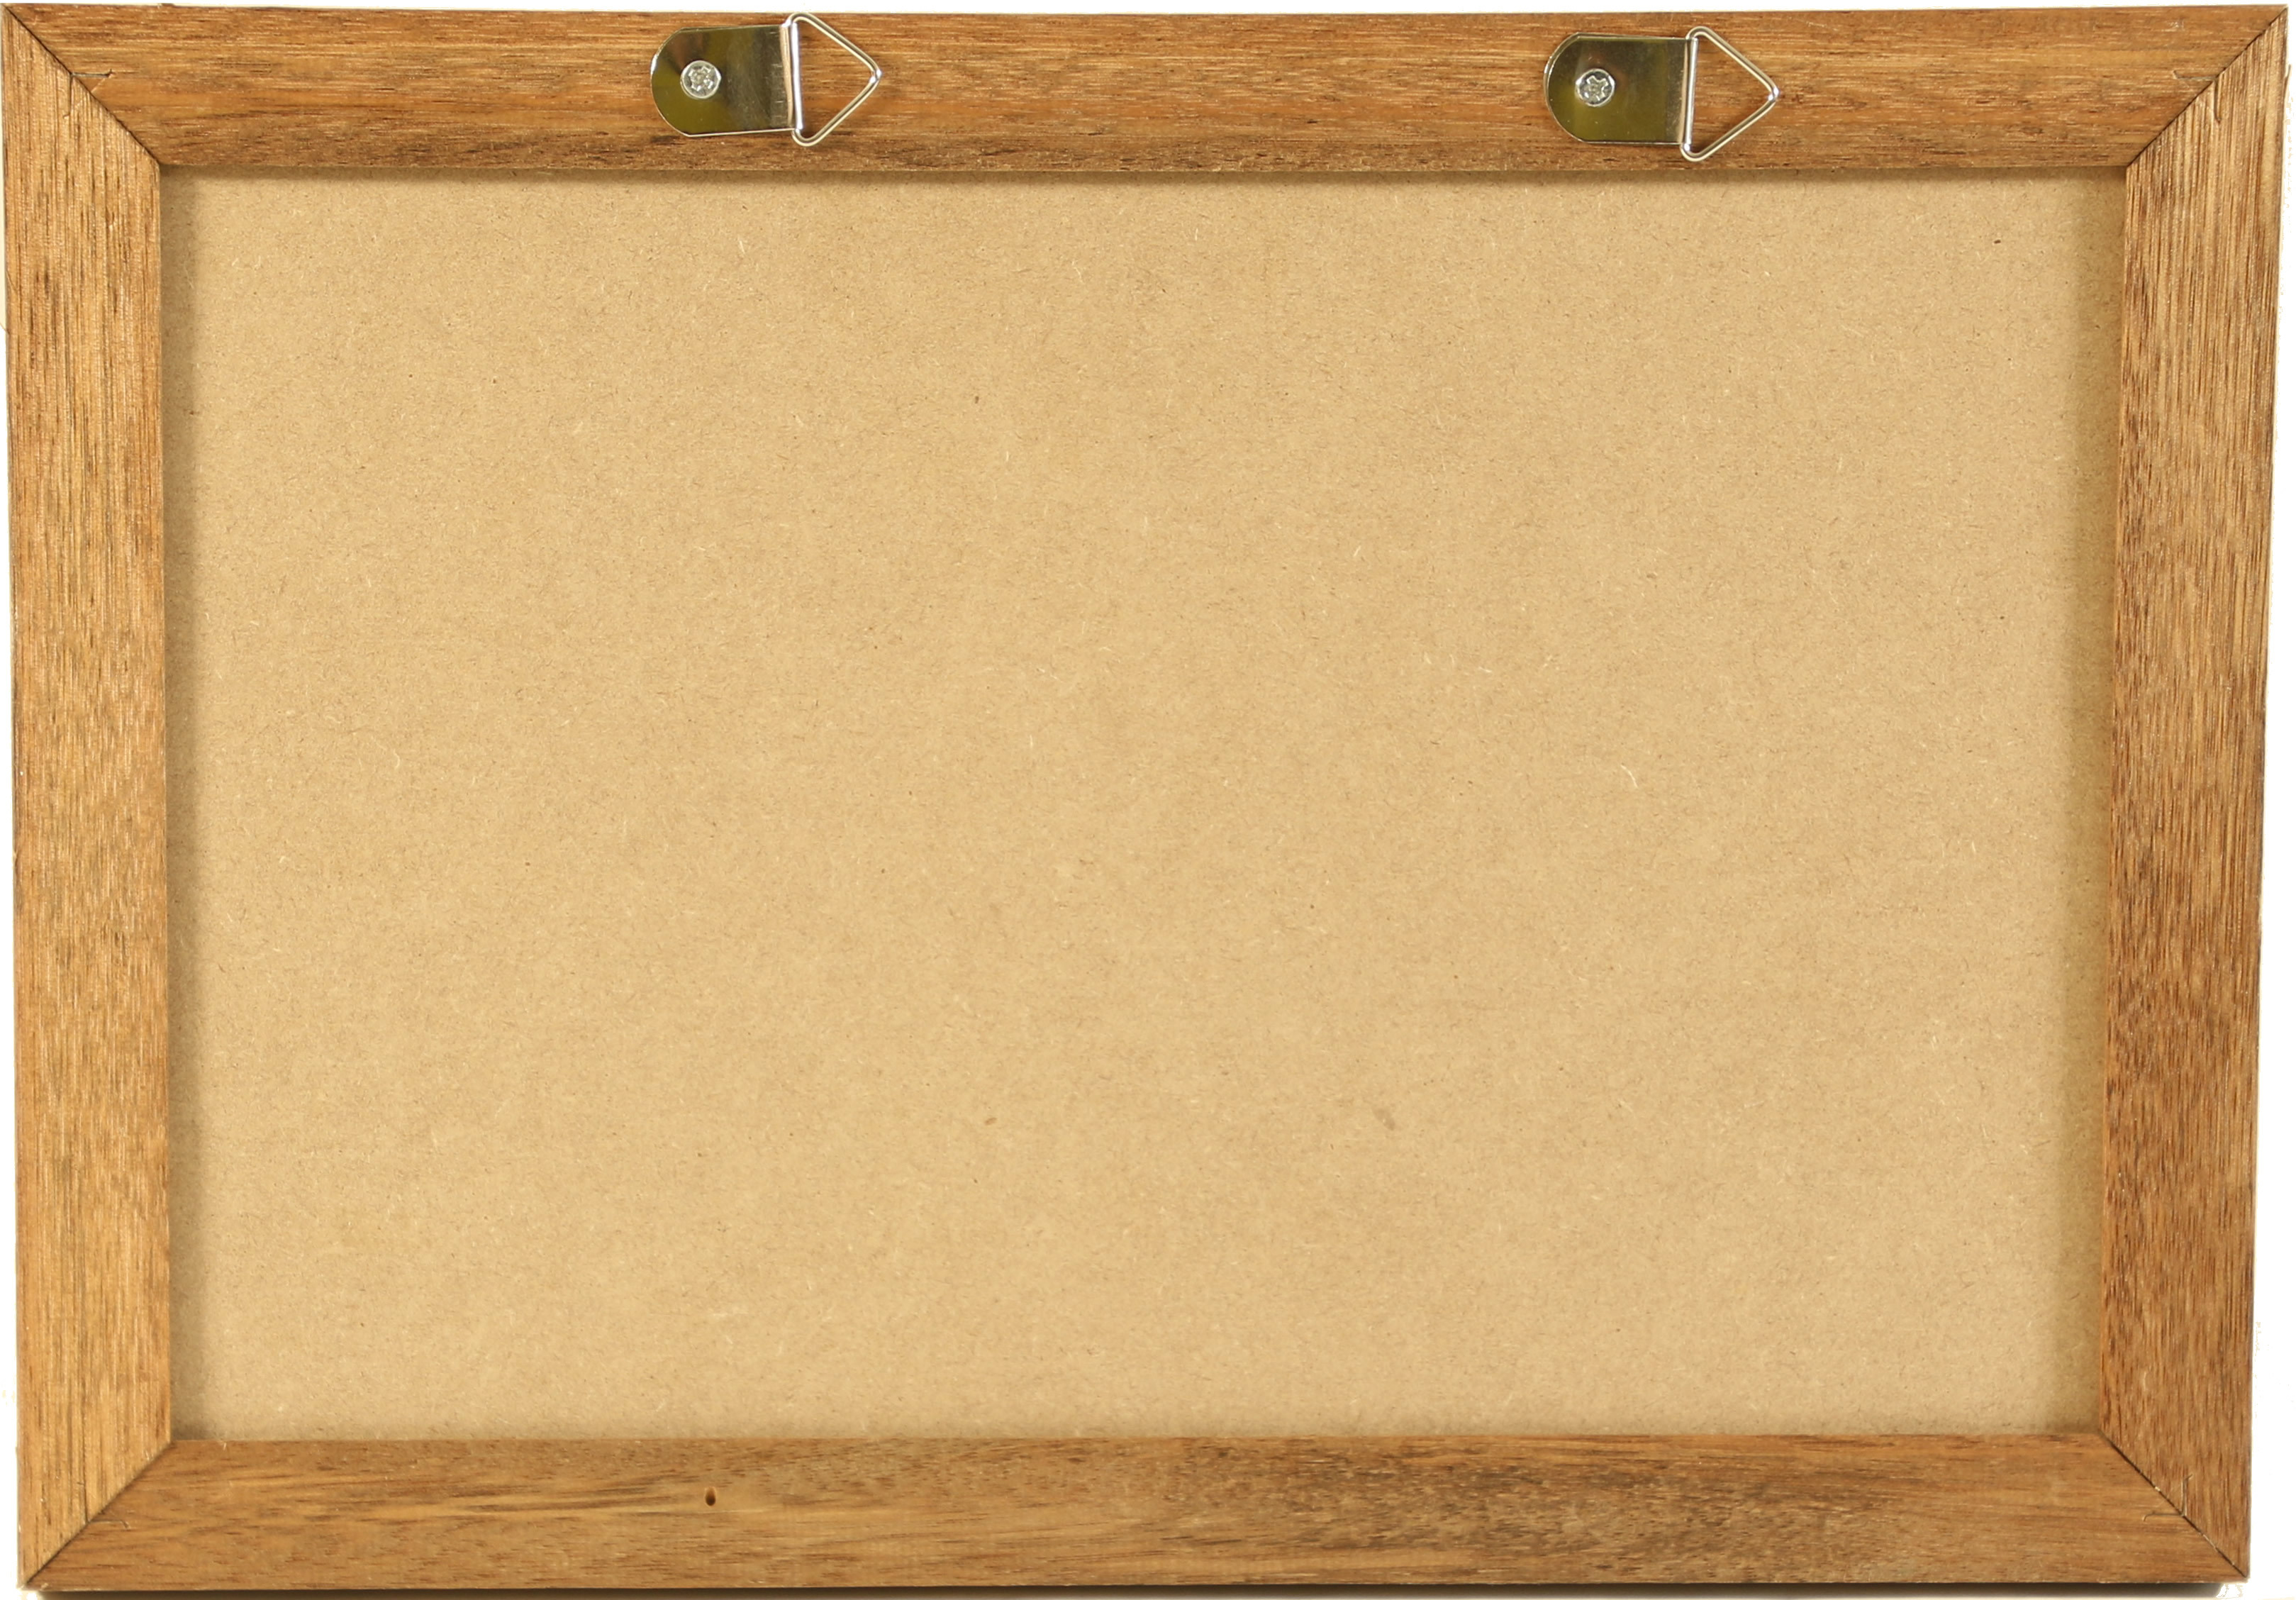 schwarz Letterboard, 33 x 23 cm, Holz, Buchstaben, Buchstabentafel, Message Board, Wandmontage, Standard